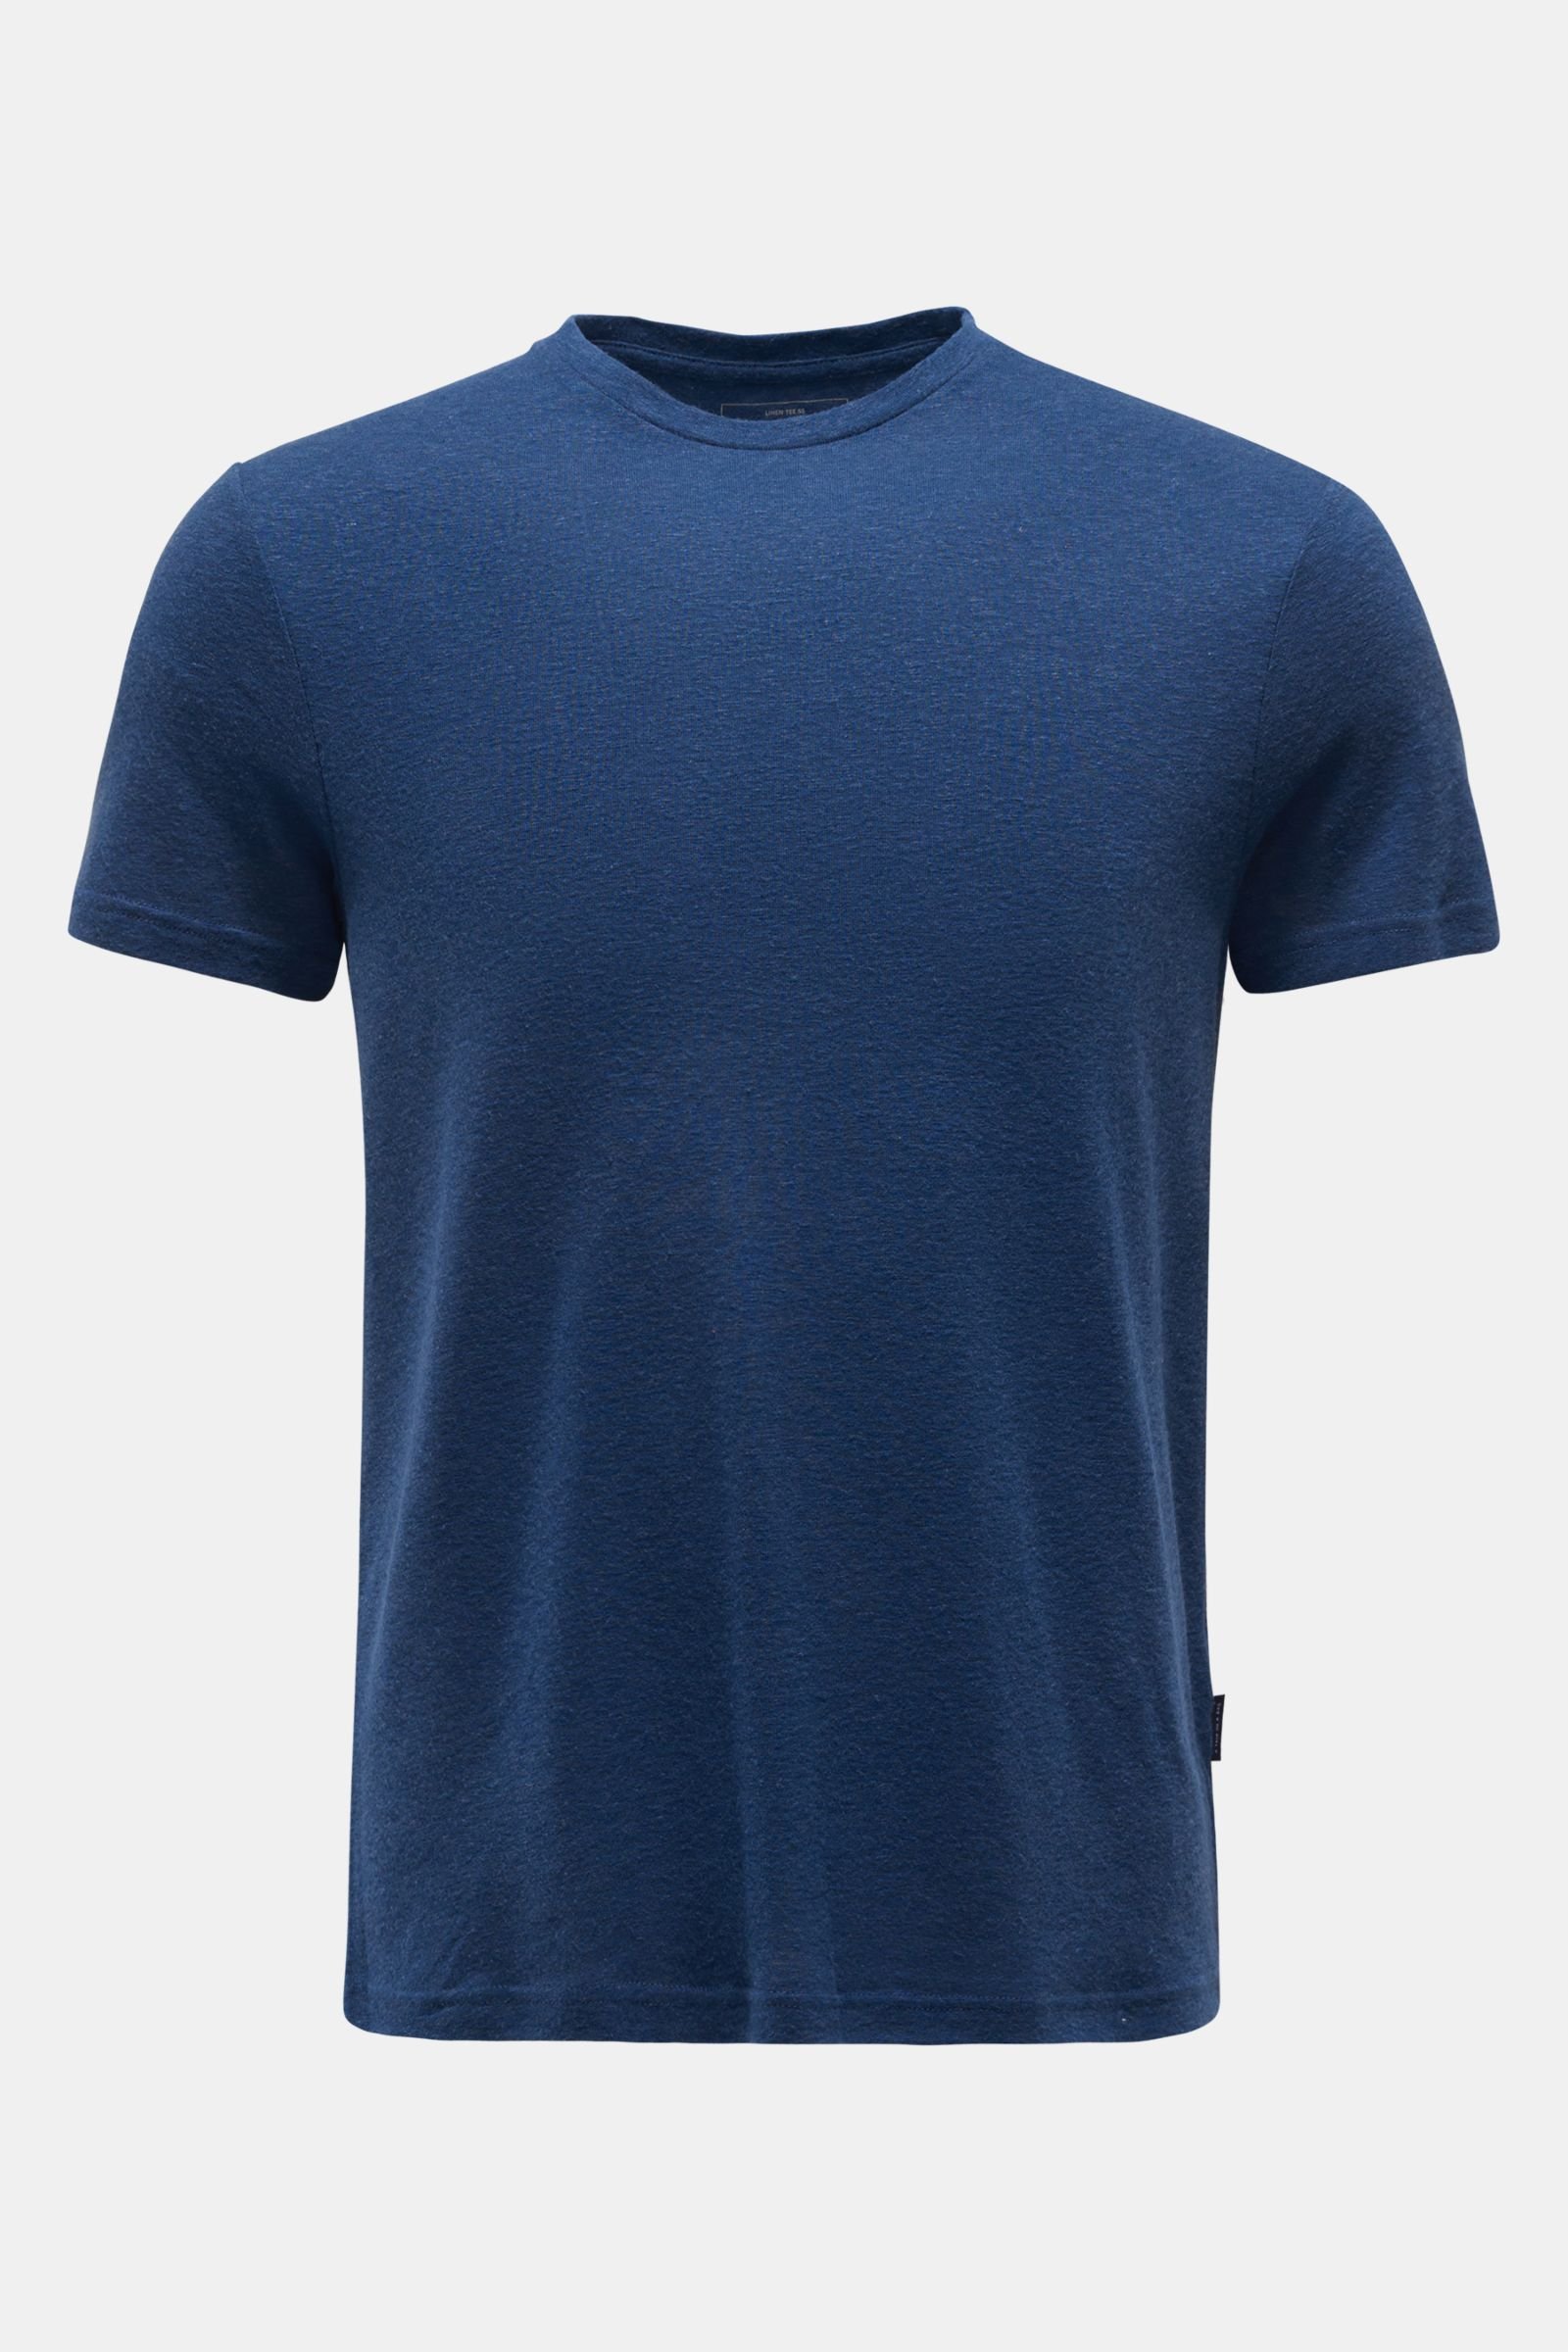 Crew neck T-shirt 'Linen Tee' dark blue